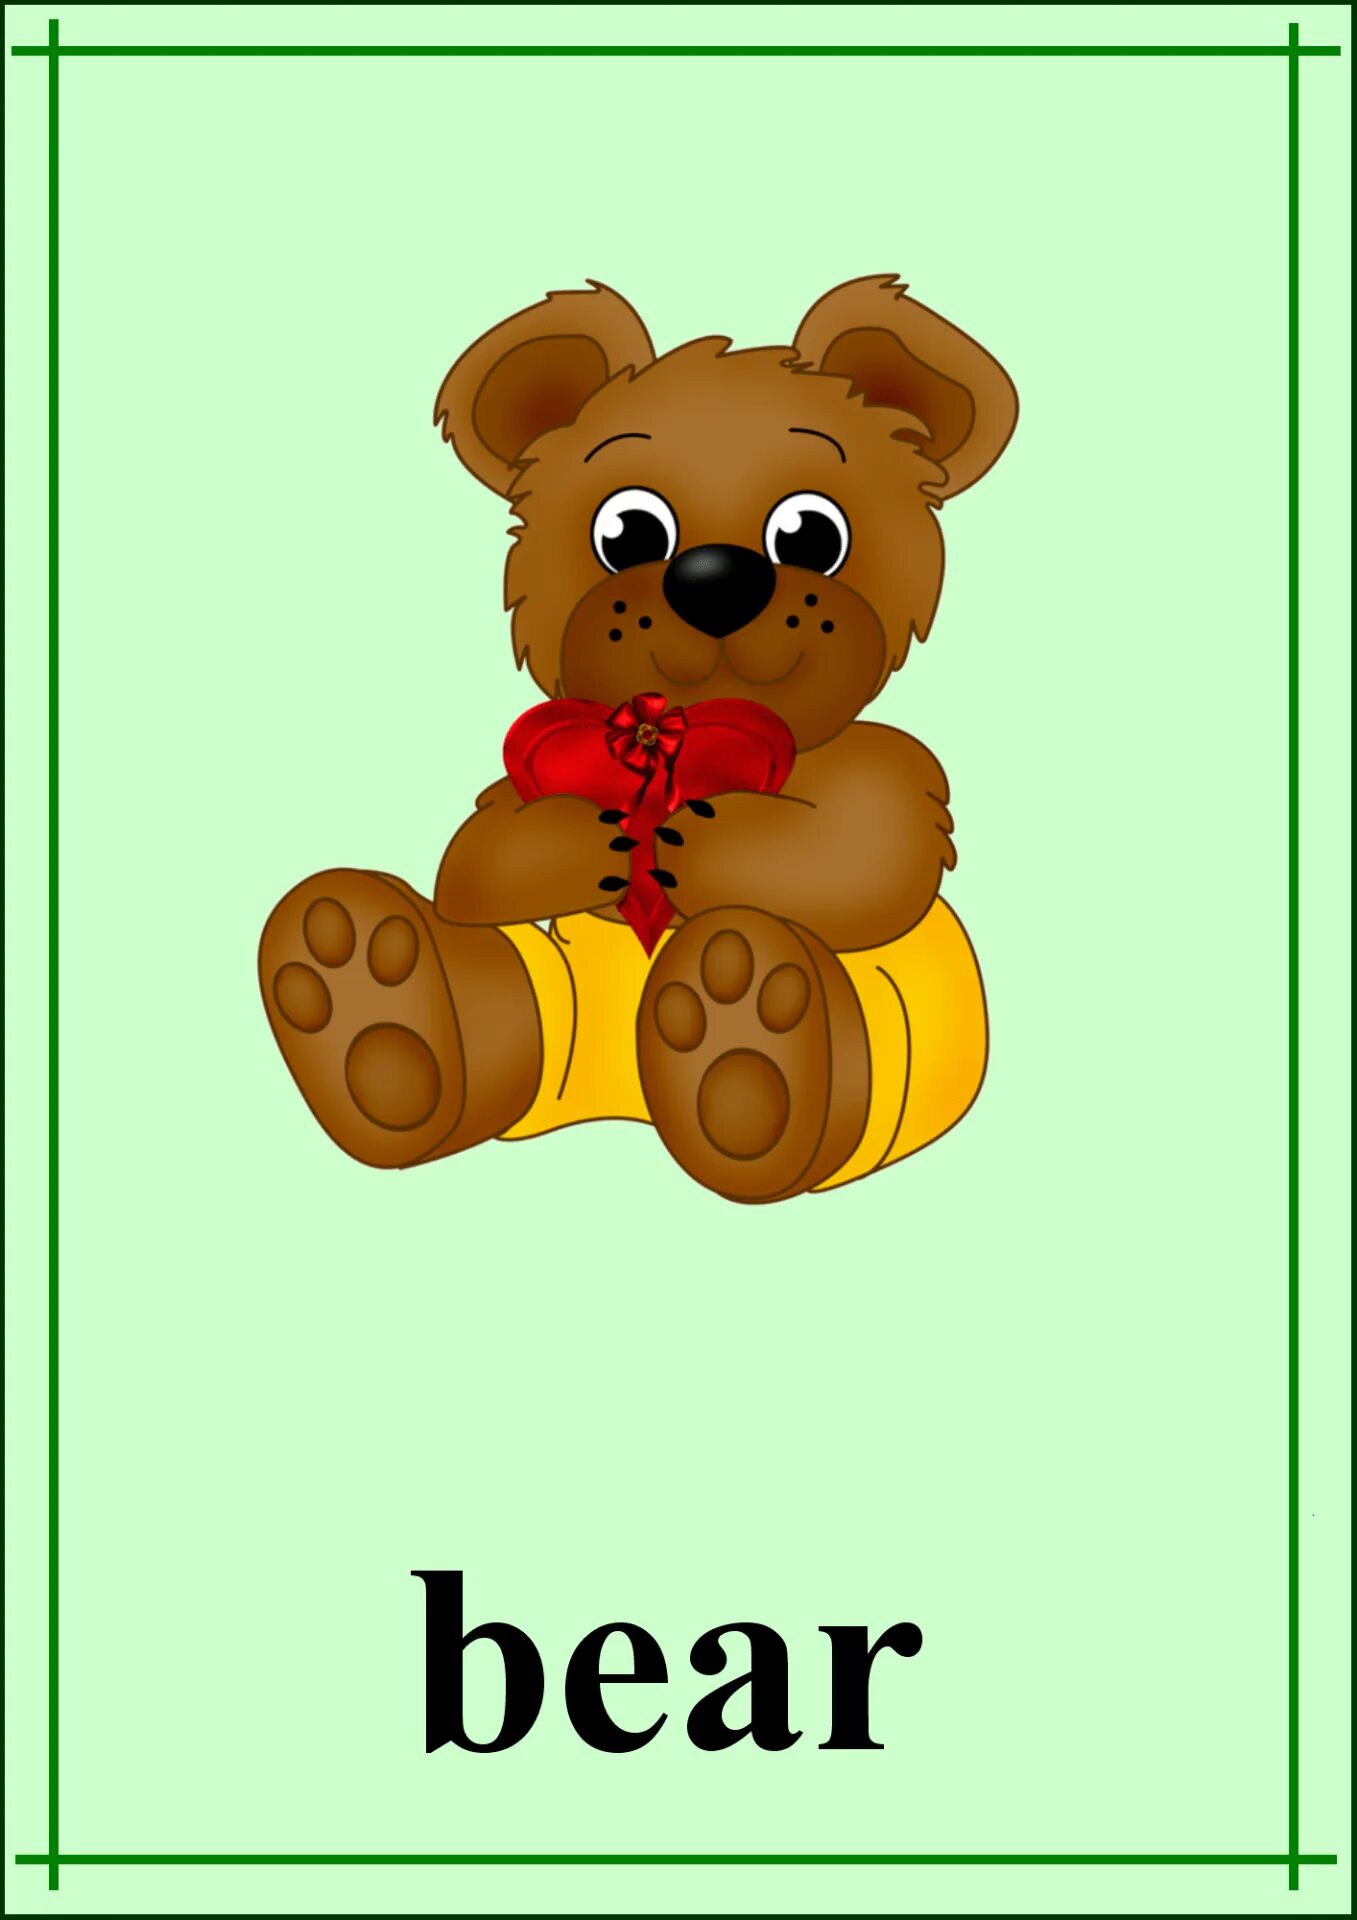 Карточки животных на английском. Карточки для детей Медвежонок. Карточки животных для детей на английском. Медведь карточка для детей.